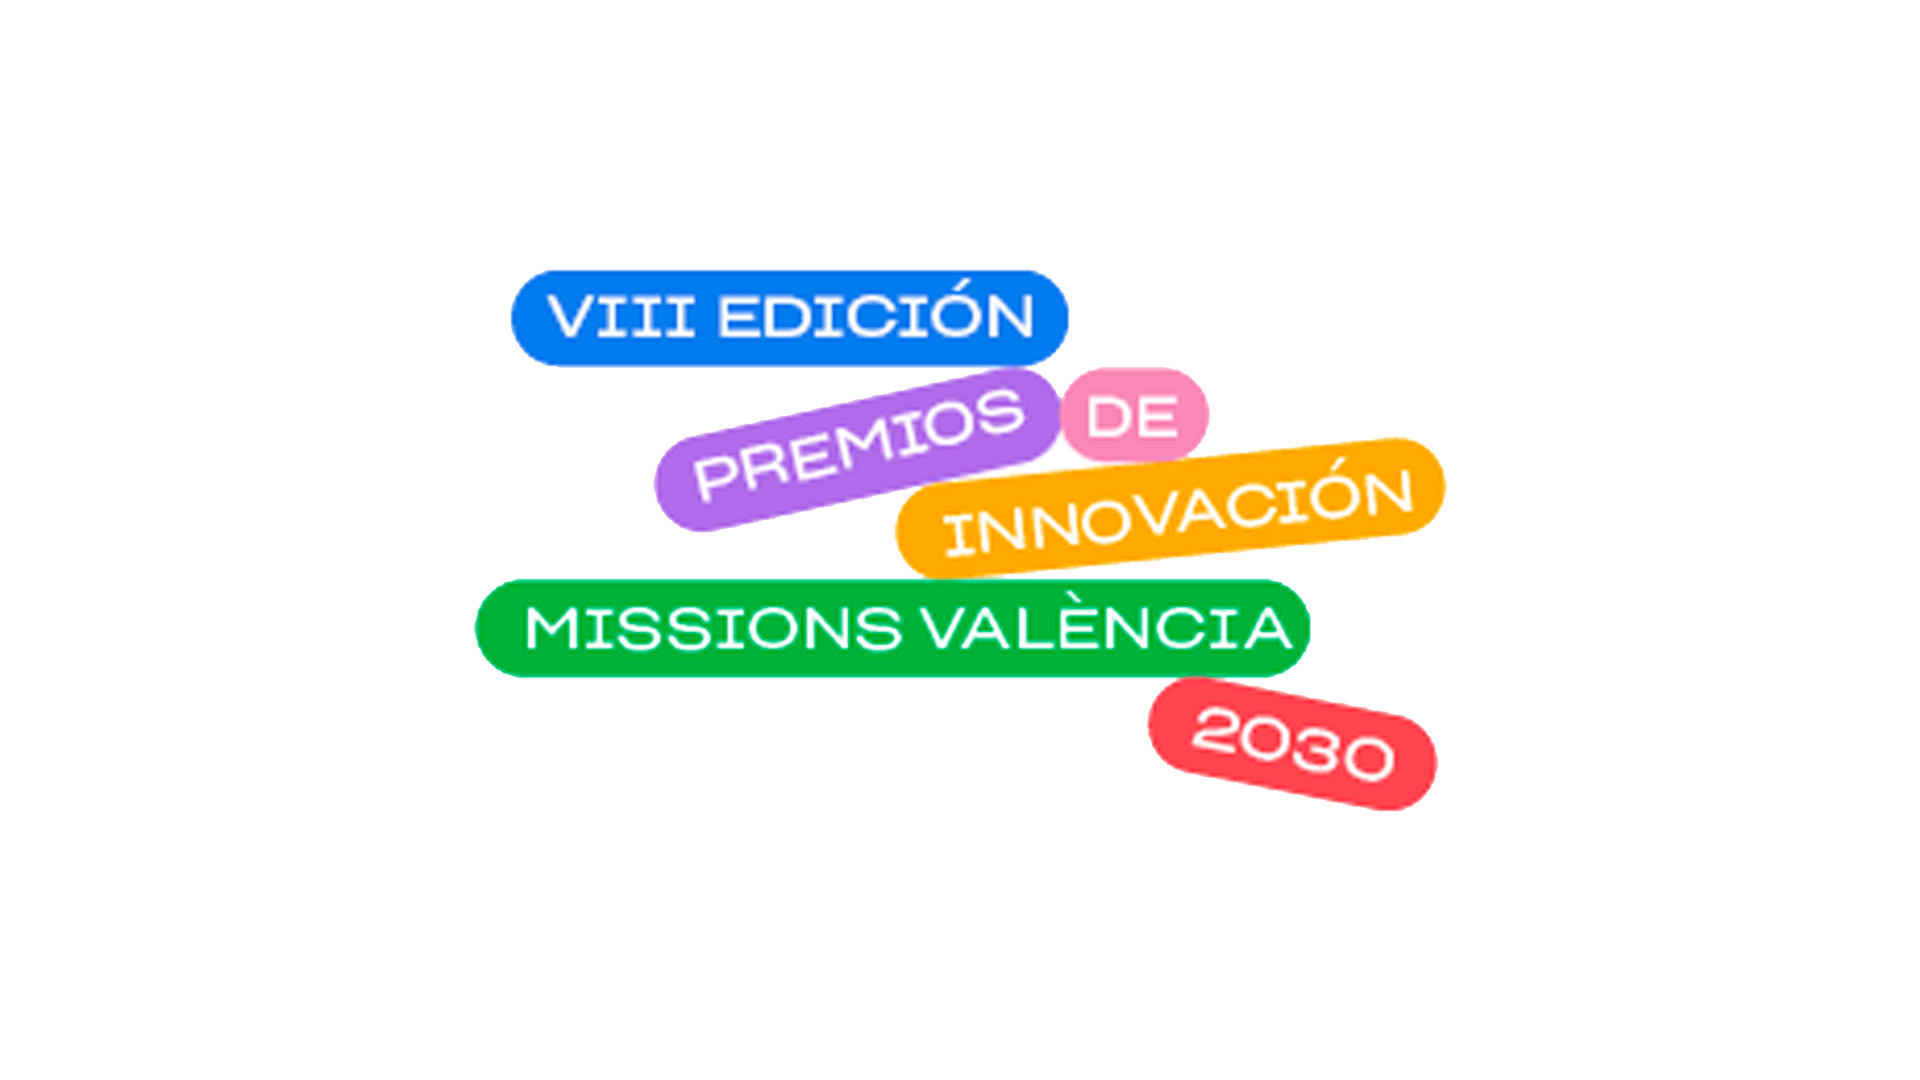 VIII Edición Premios a la Innovación Missions València 2030